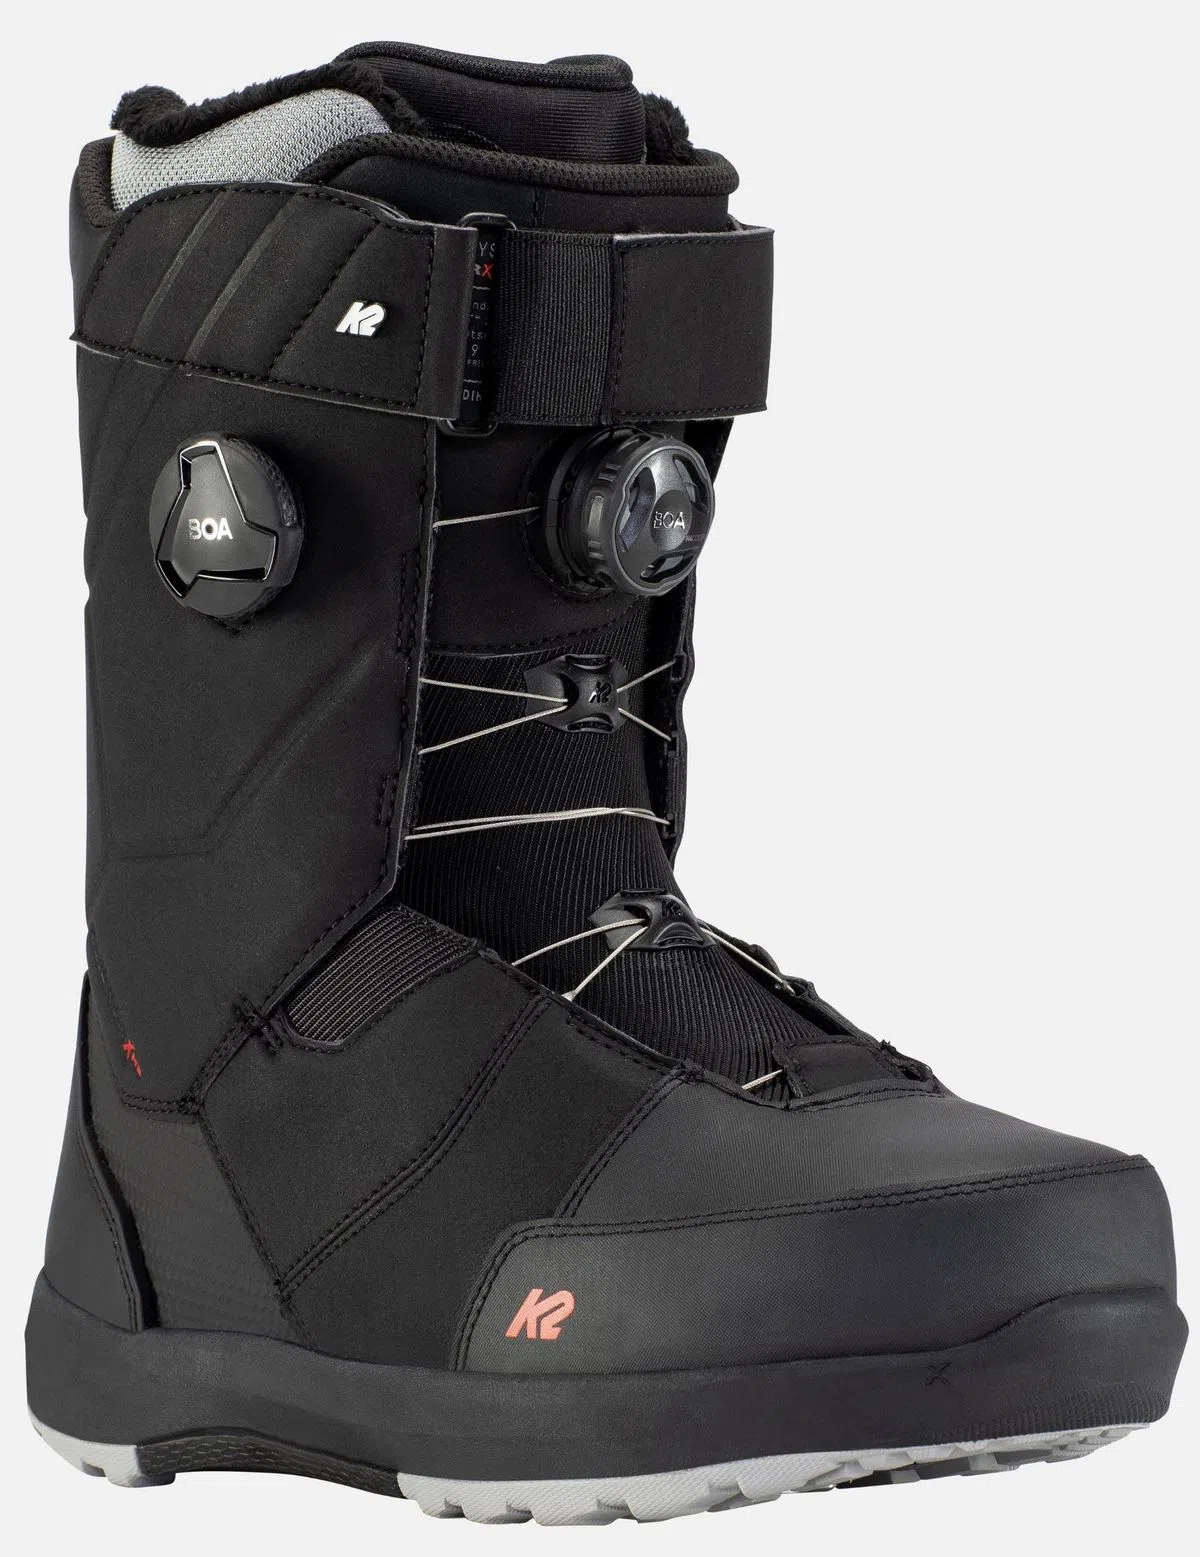 K2 Snowboard Schuhe Snowboardboot MAYSIS Boot 2021 grey Snowboard Schuhe Boots 